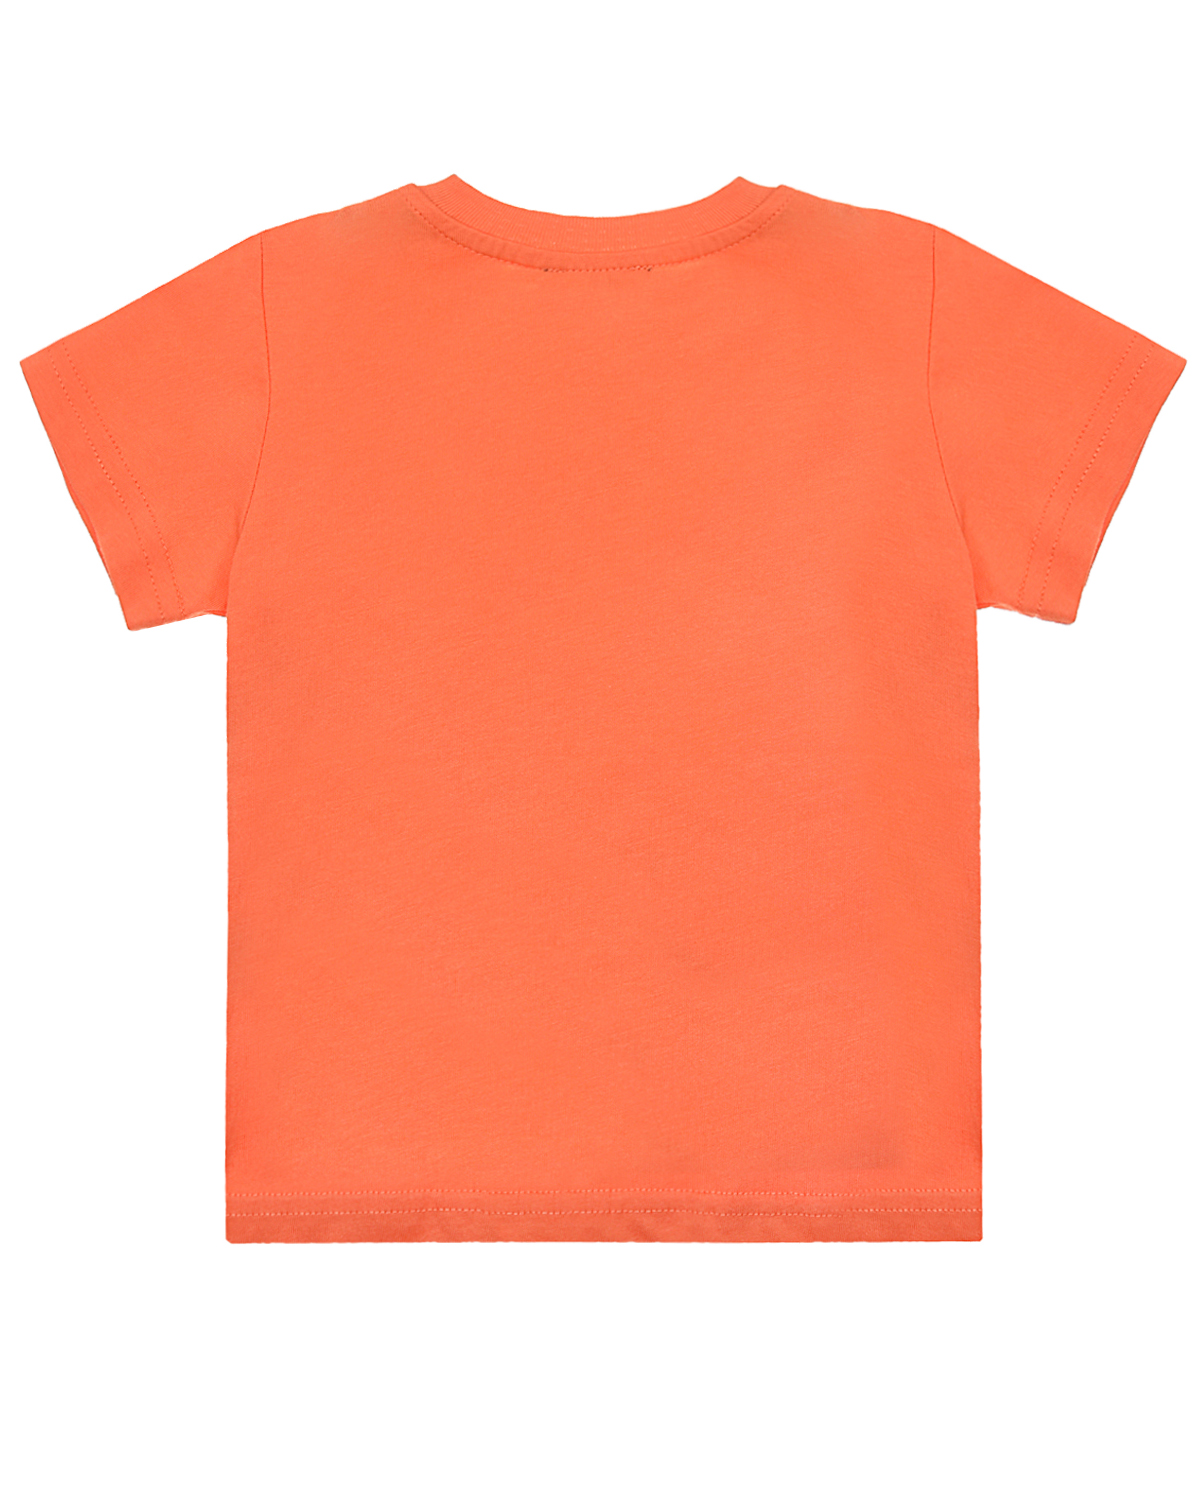 Оранжевая футболка с текстовым принтом Diesel детская, размер 80, цвет оранжевый - фото 3